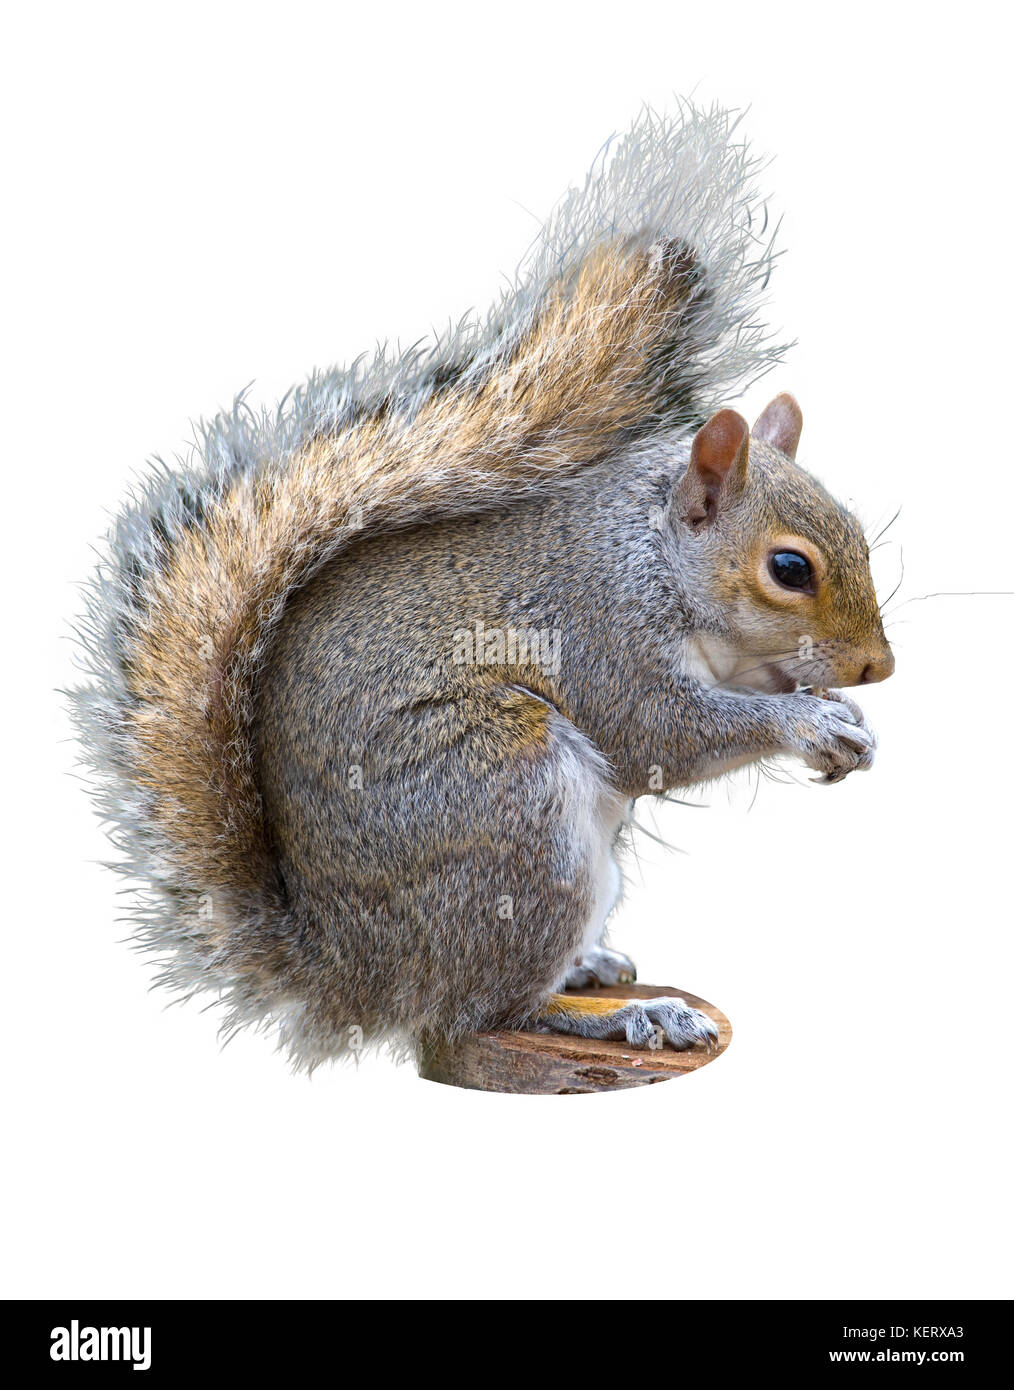 L'écureuil gris Sciurus carolinensis, sur un fond blanc Banque D'Images